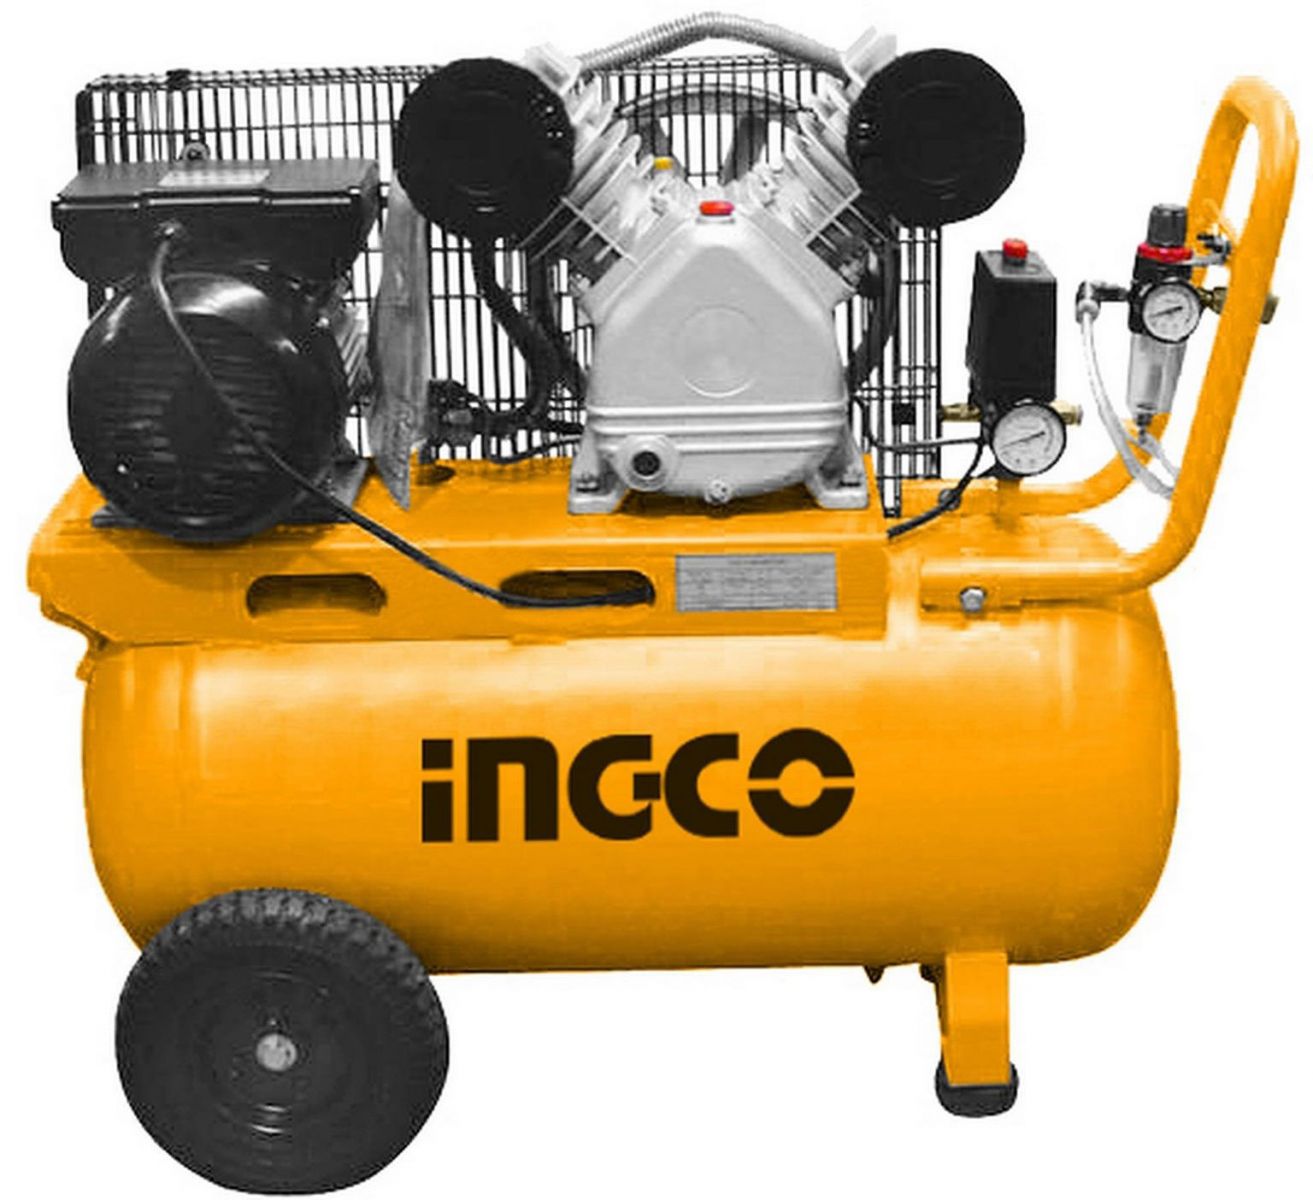 ingco-AC300508T